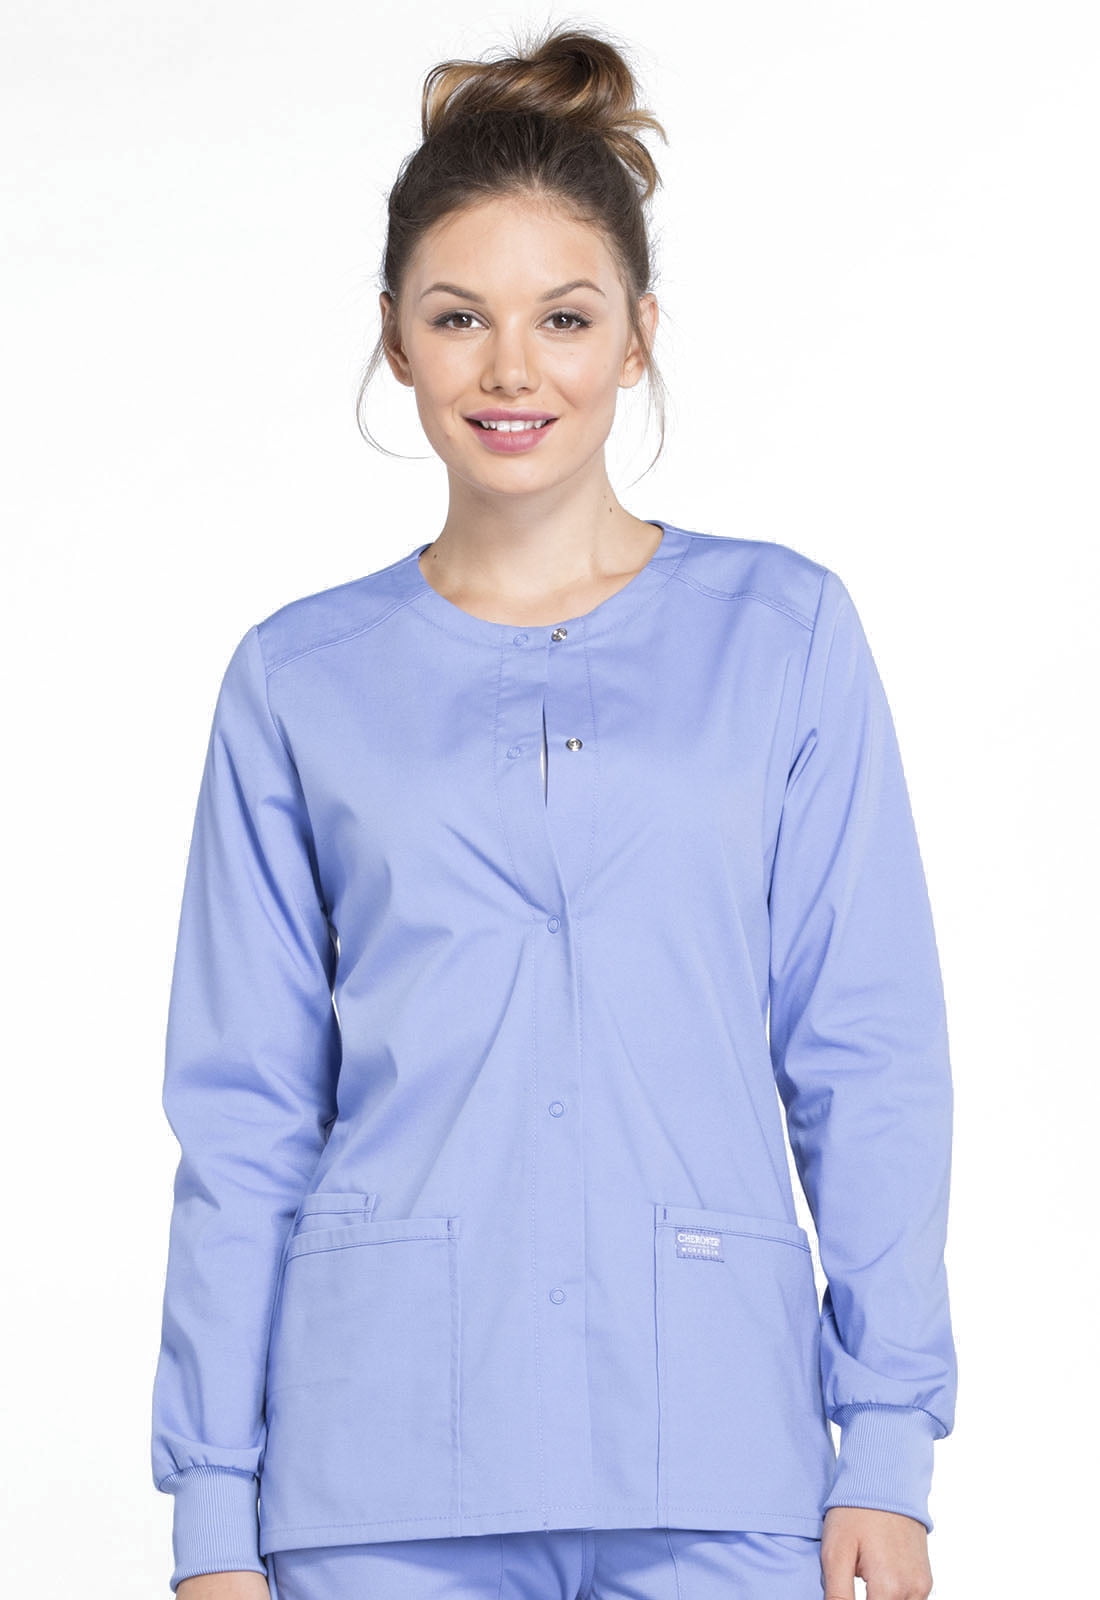 Cherokee Nurses Scrubs Women's Navy Blue Cardigan Jacket Long Sleeve XS 3XL